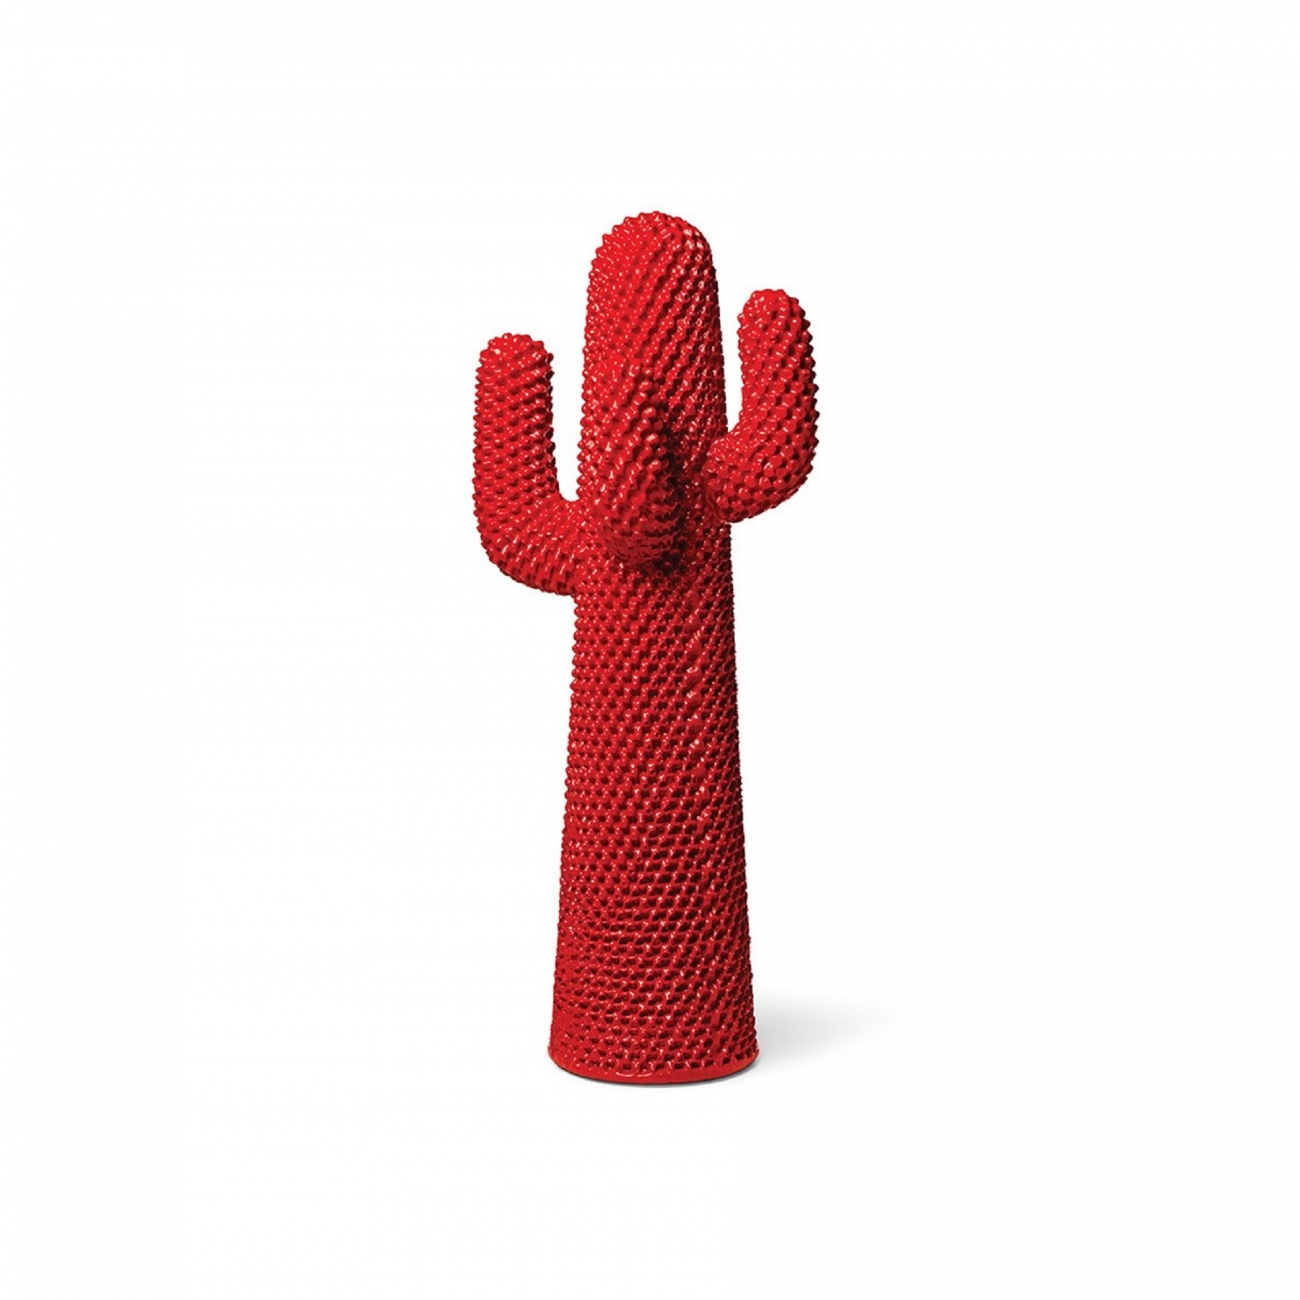 Gufram Cactus Rossocactus Coat Hangers